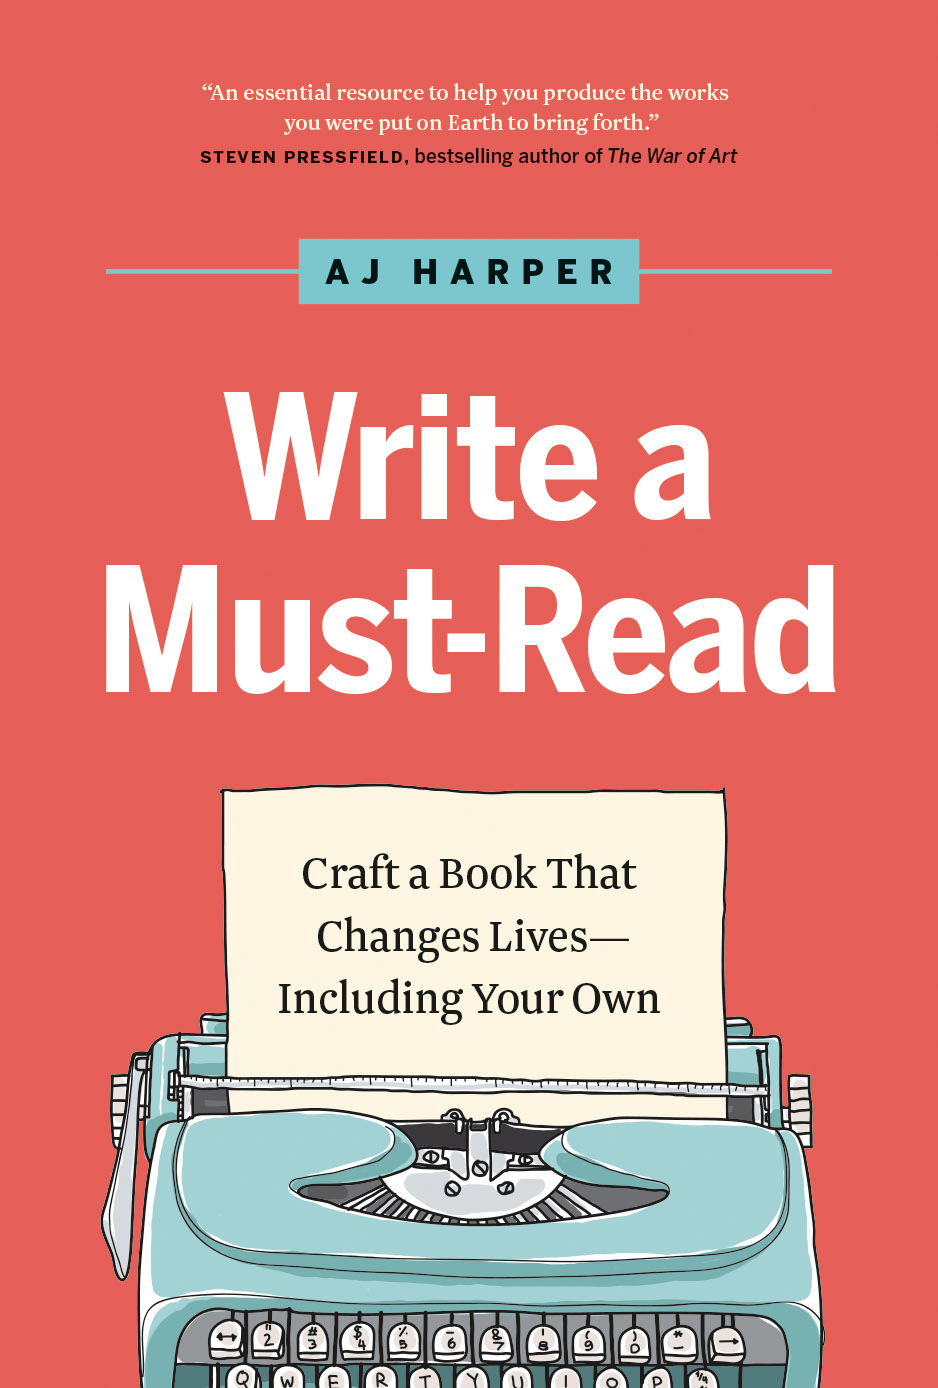 Write a Must-Read by AJ Harper